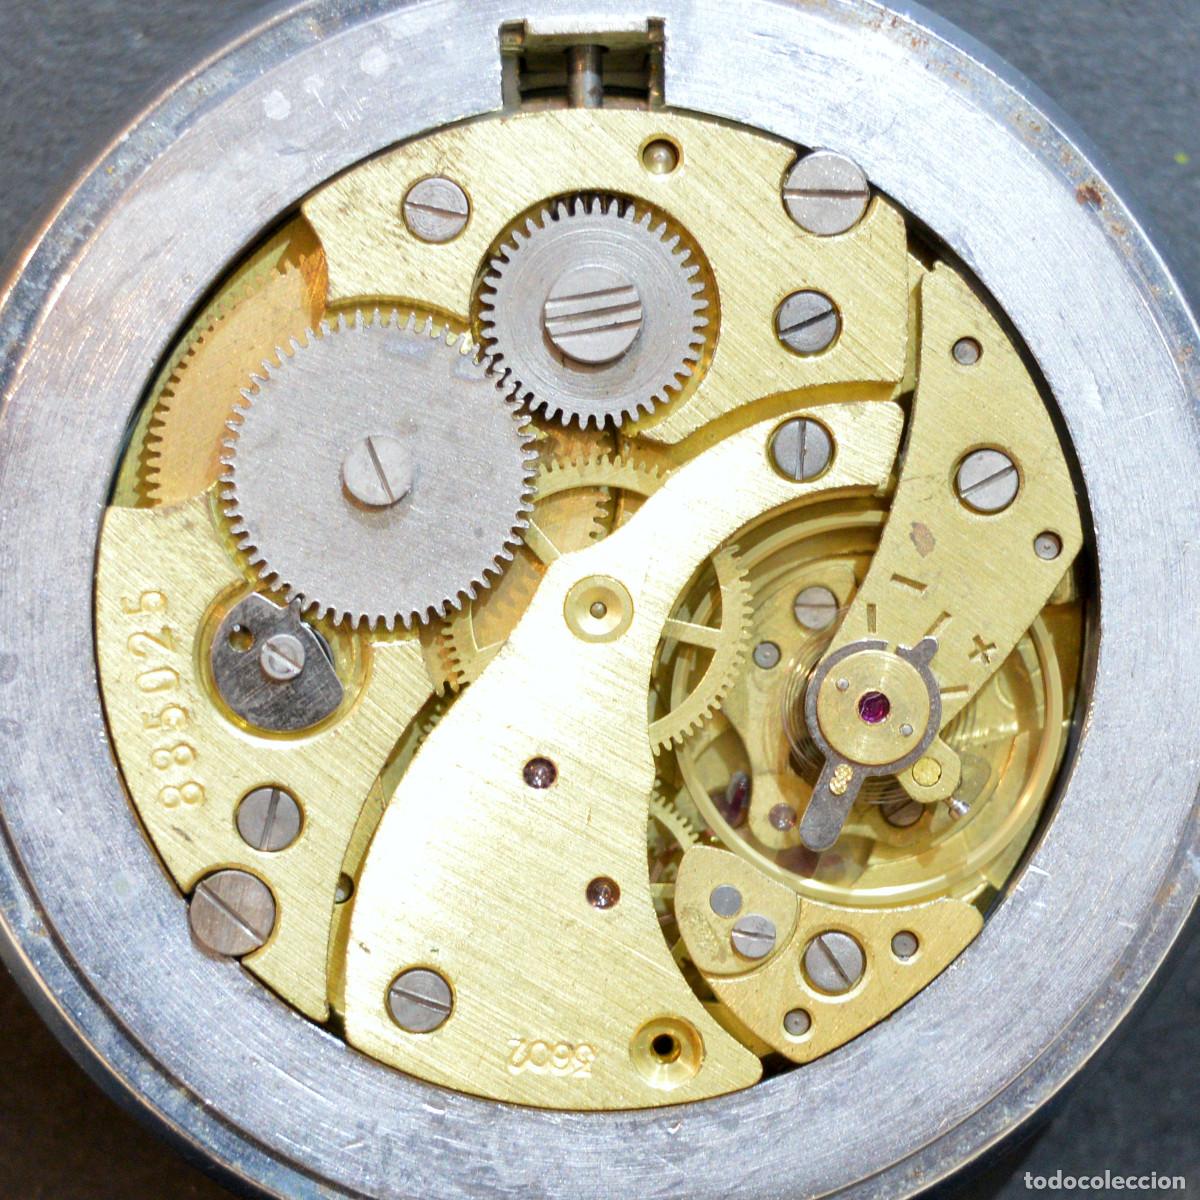 Antiguo Mecanismo De Reloj De Bolsillo Soviético En Color Sepia Con Viñeta  Blanca Fotos, retratos, imágenes y fotografía de archivo libres de derecho.  Image 64169521